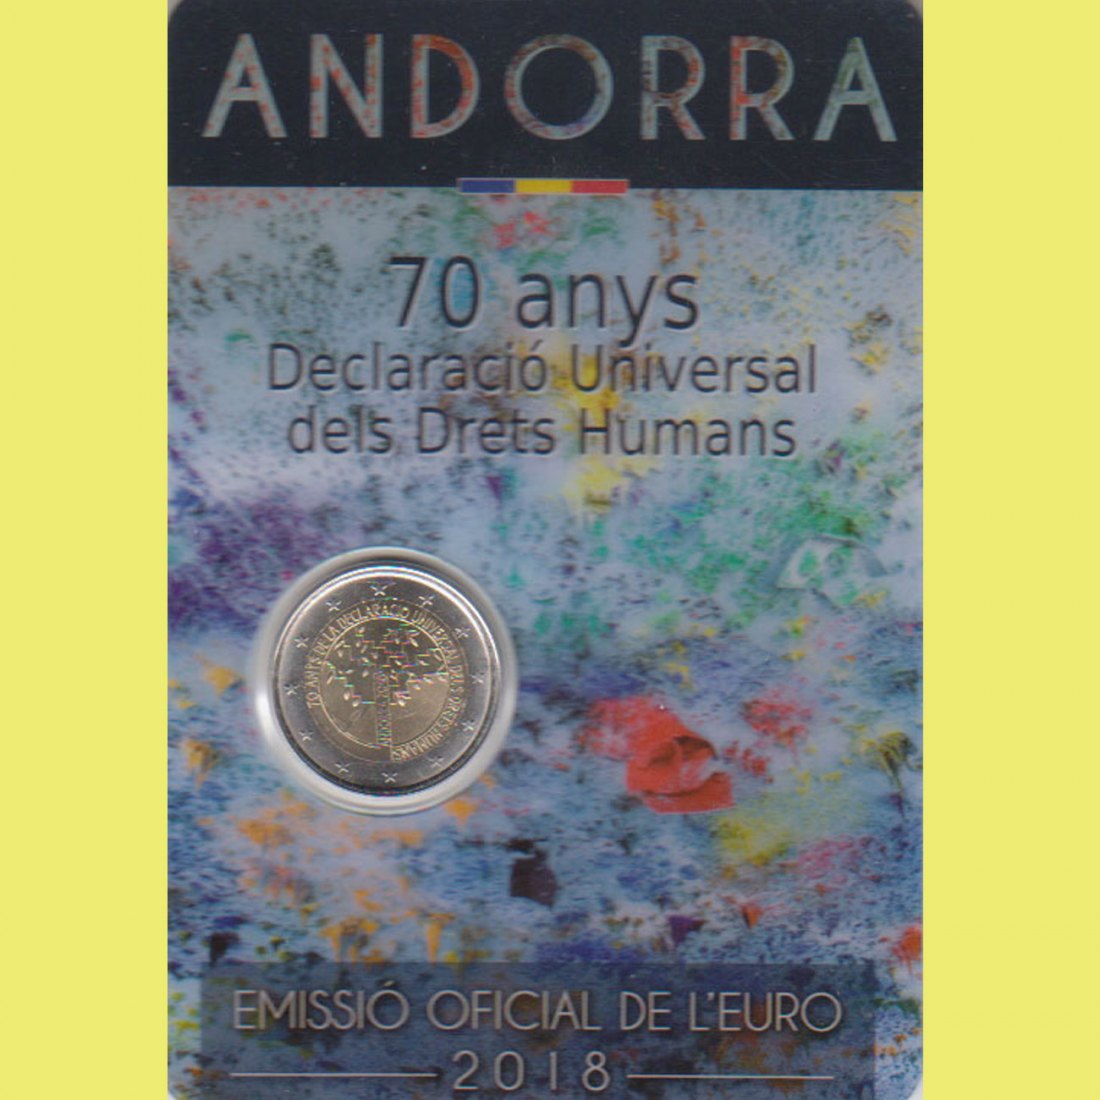  Offiz. 2-Euro-Sondermünze Andorra *70 Jahre Erklärung der Menschenrechte* 2018   